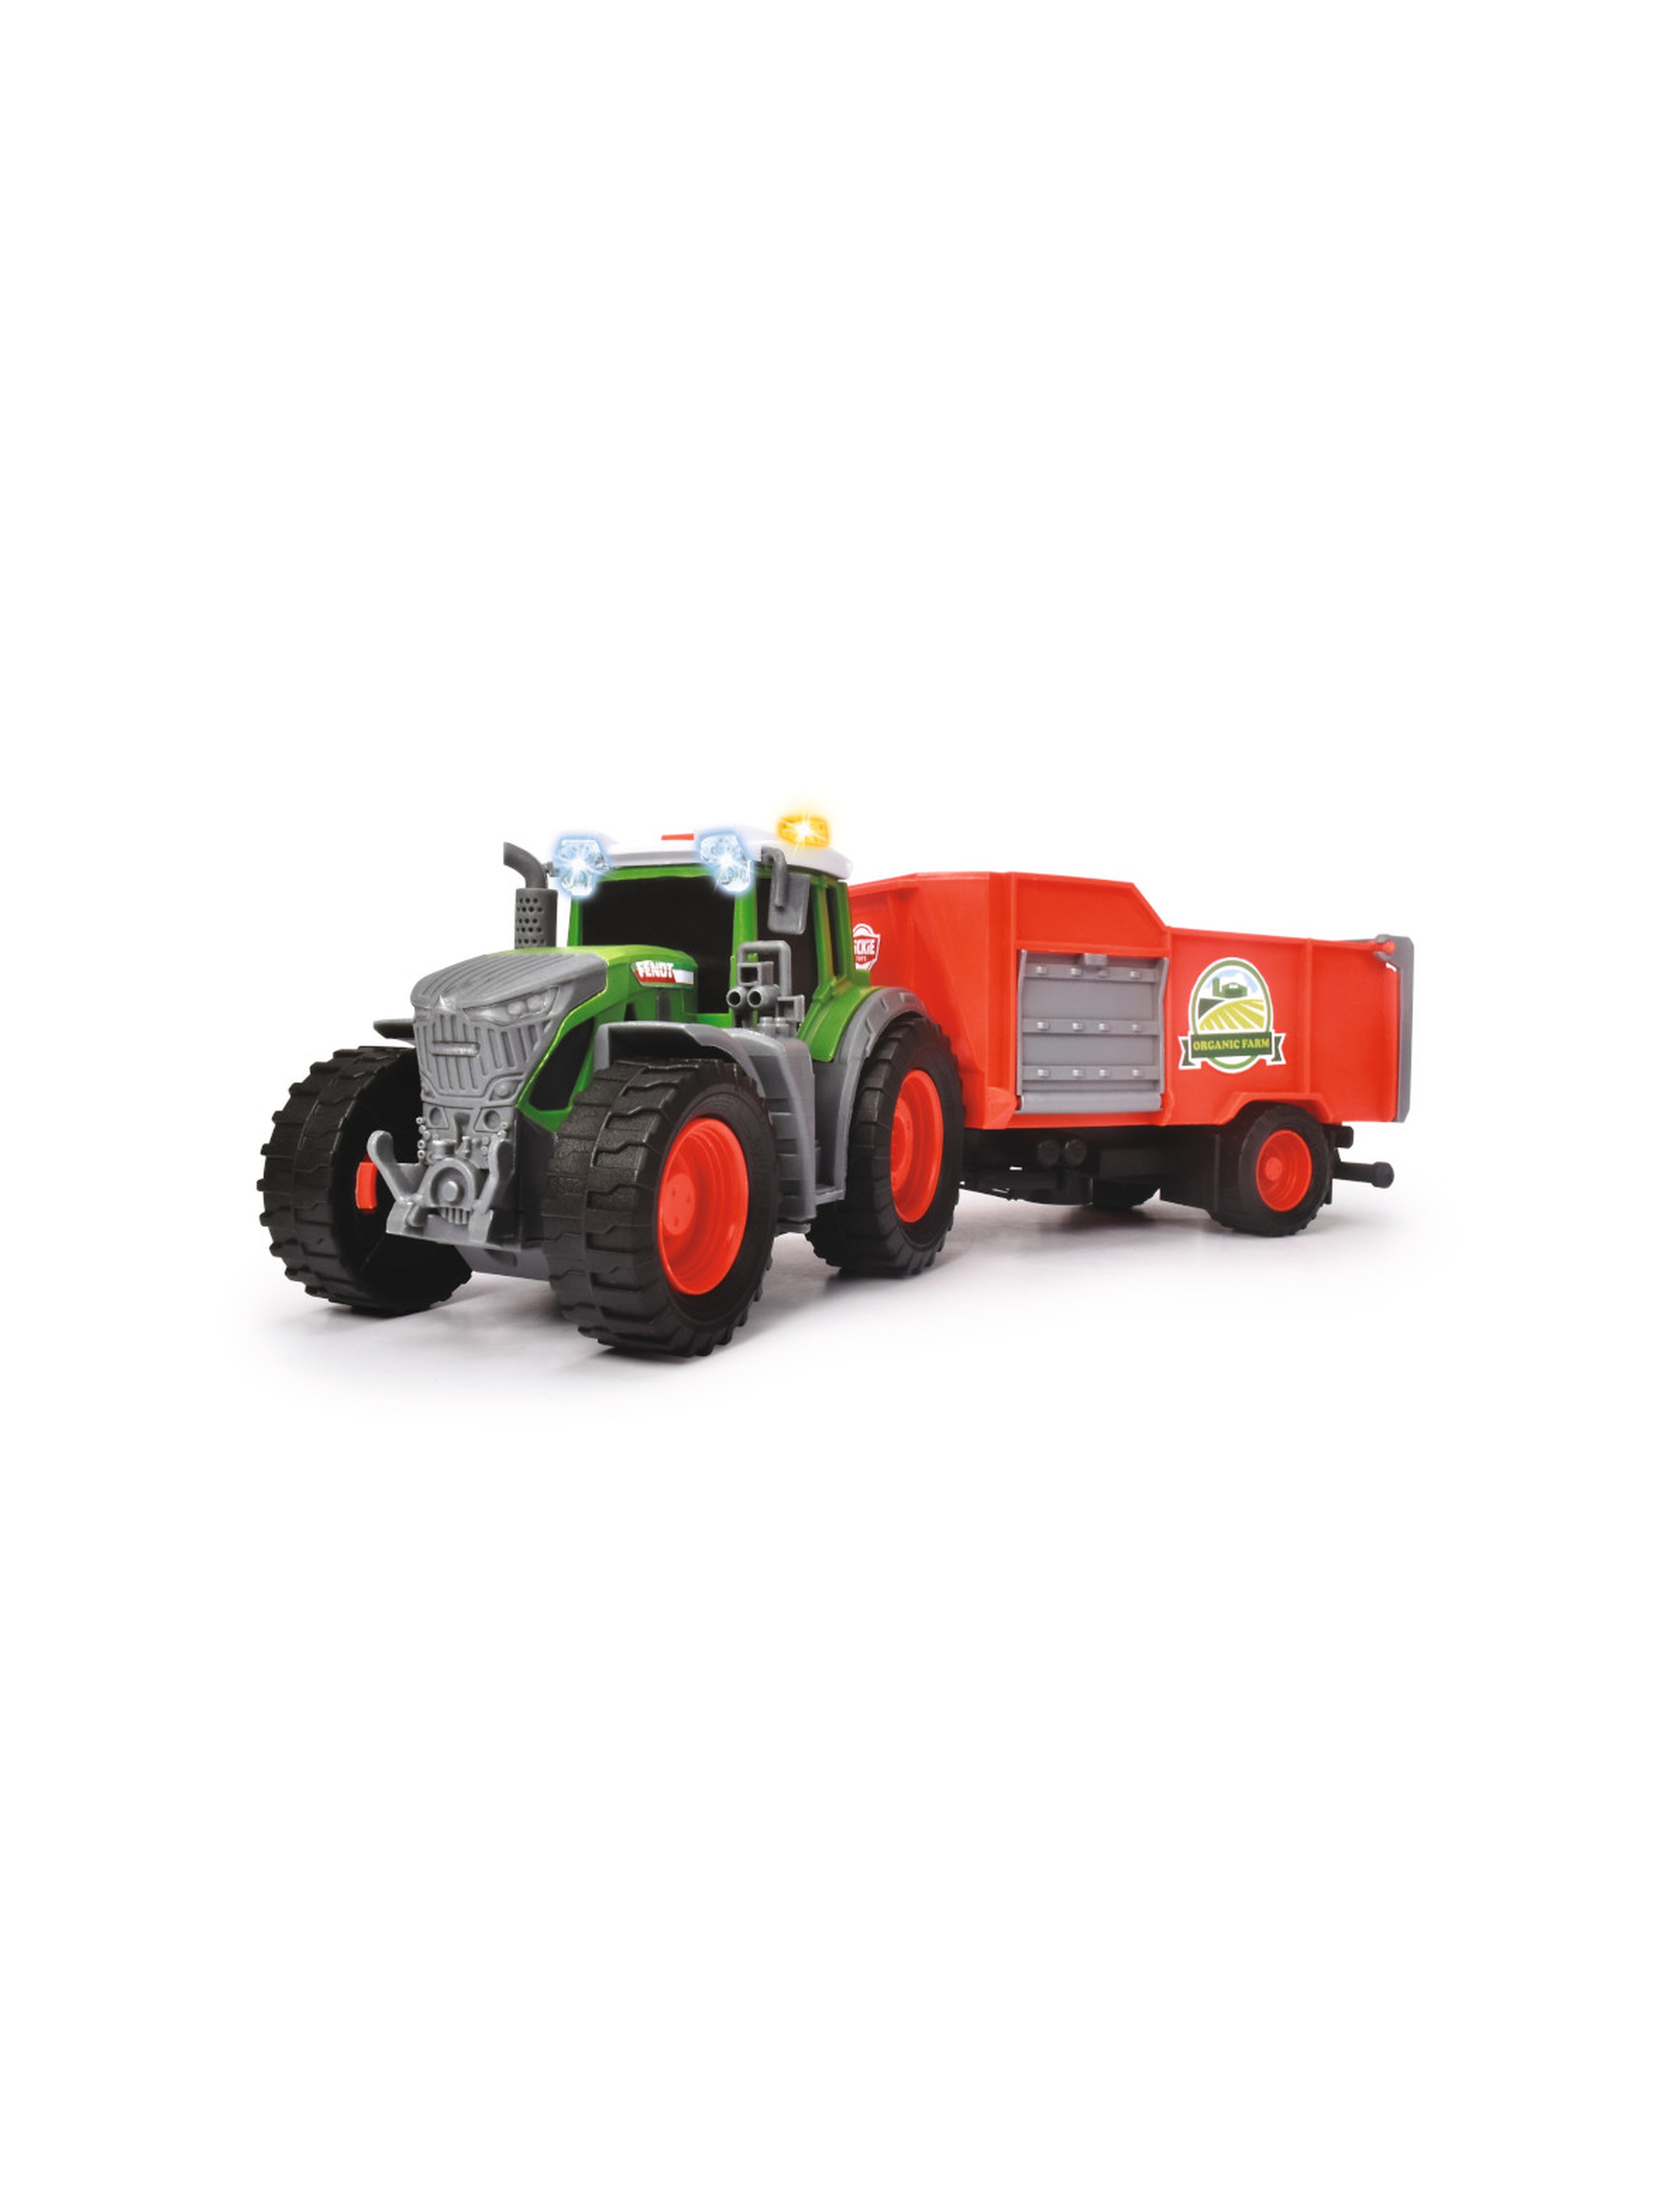 Dickie Farm - Traktor z przyczepą 26 cm